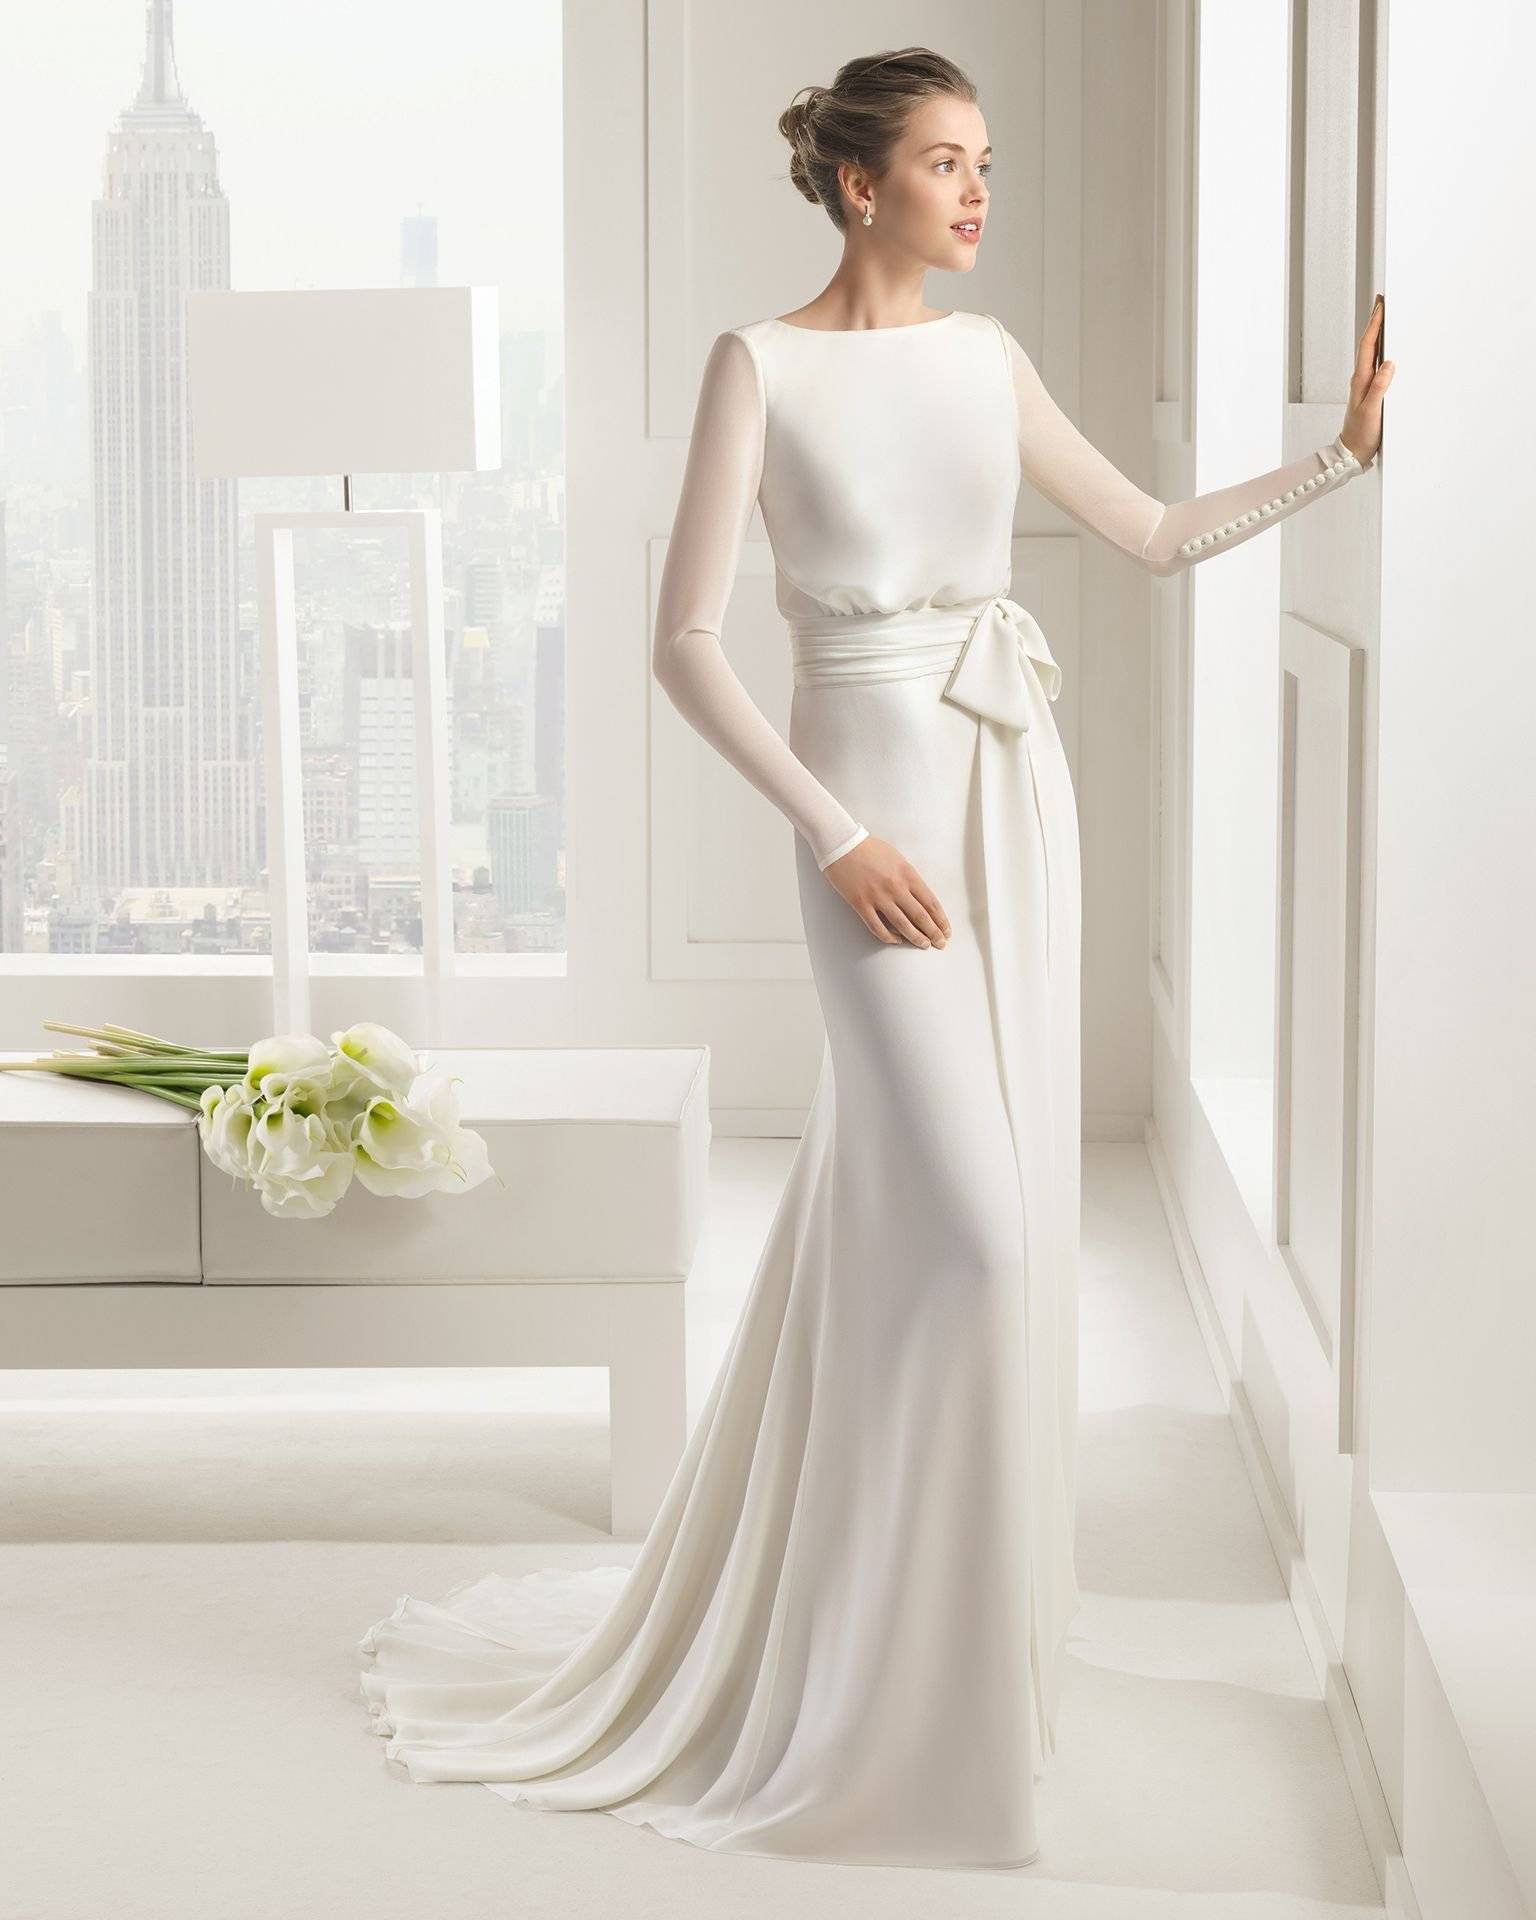 Свадебные платья с рукавами – вершина элегантности и стиля!